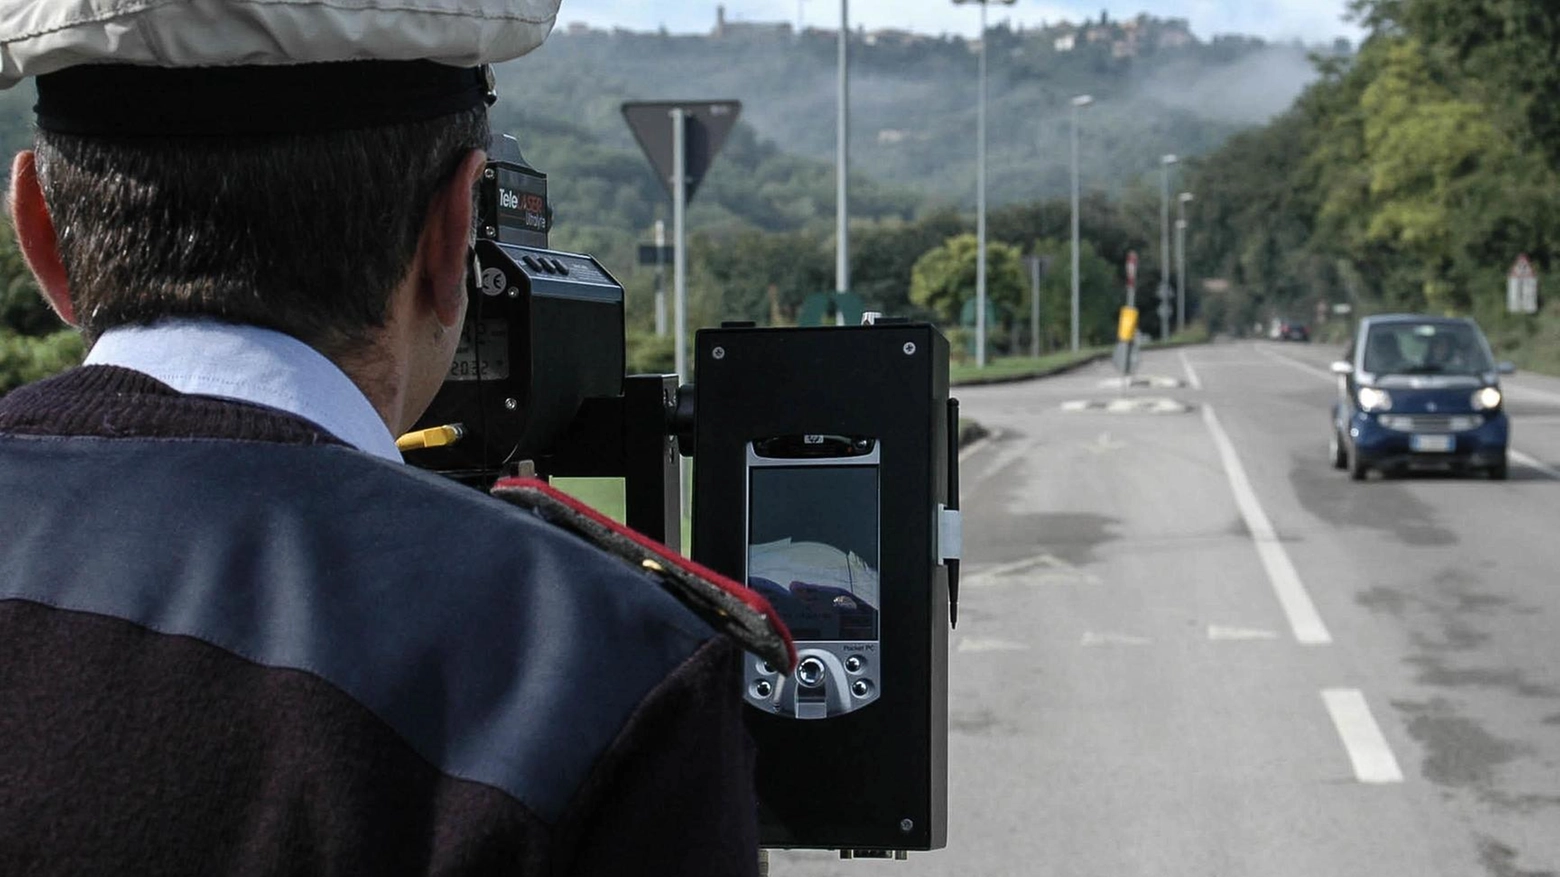 Pericoli in strada, l’allarme da Ceparana: "Velocità e sosta selvaggia creano problemi"